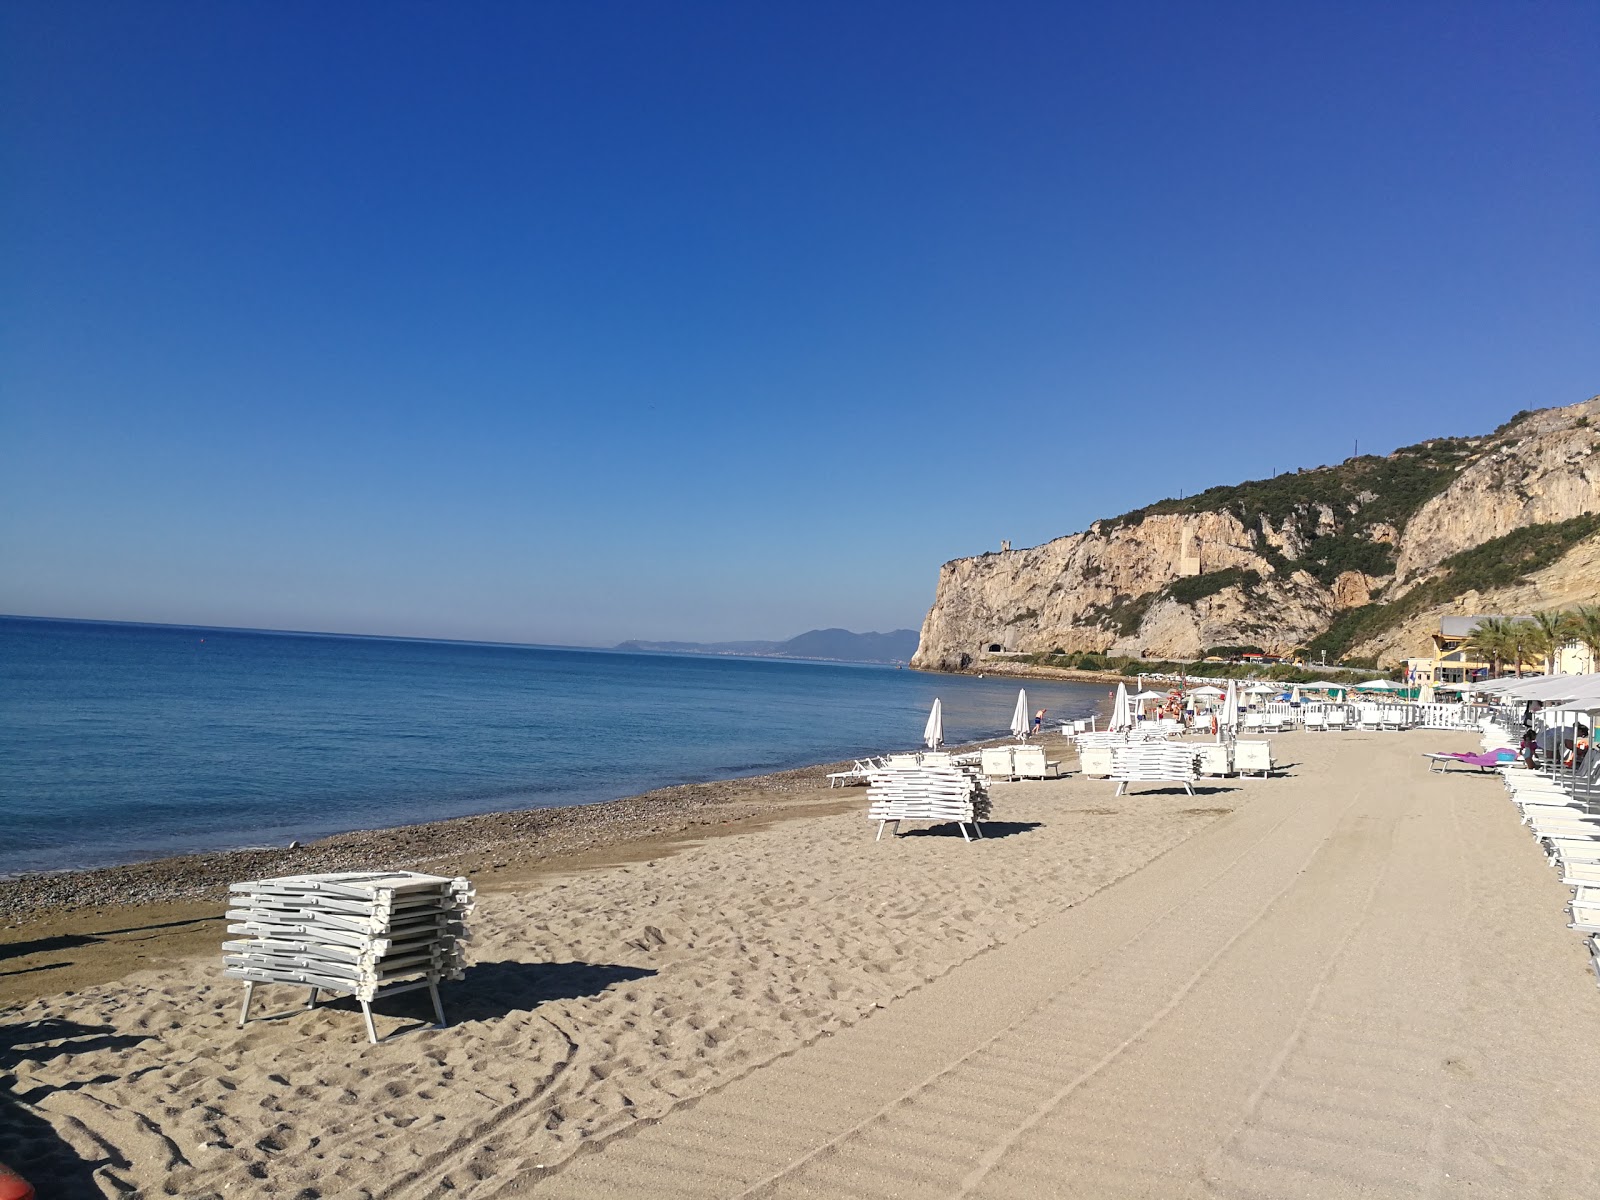 Foto de Spiaggia libera Attrezzata área de complejo turístico de playa